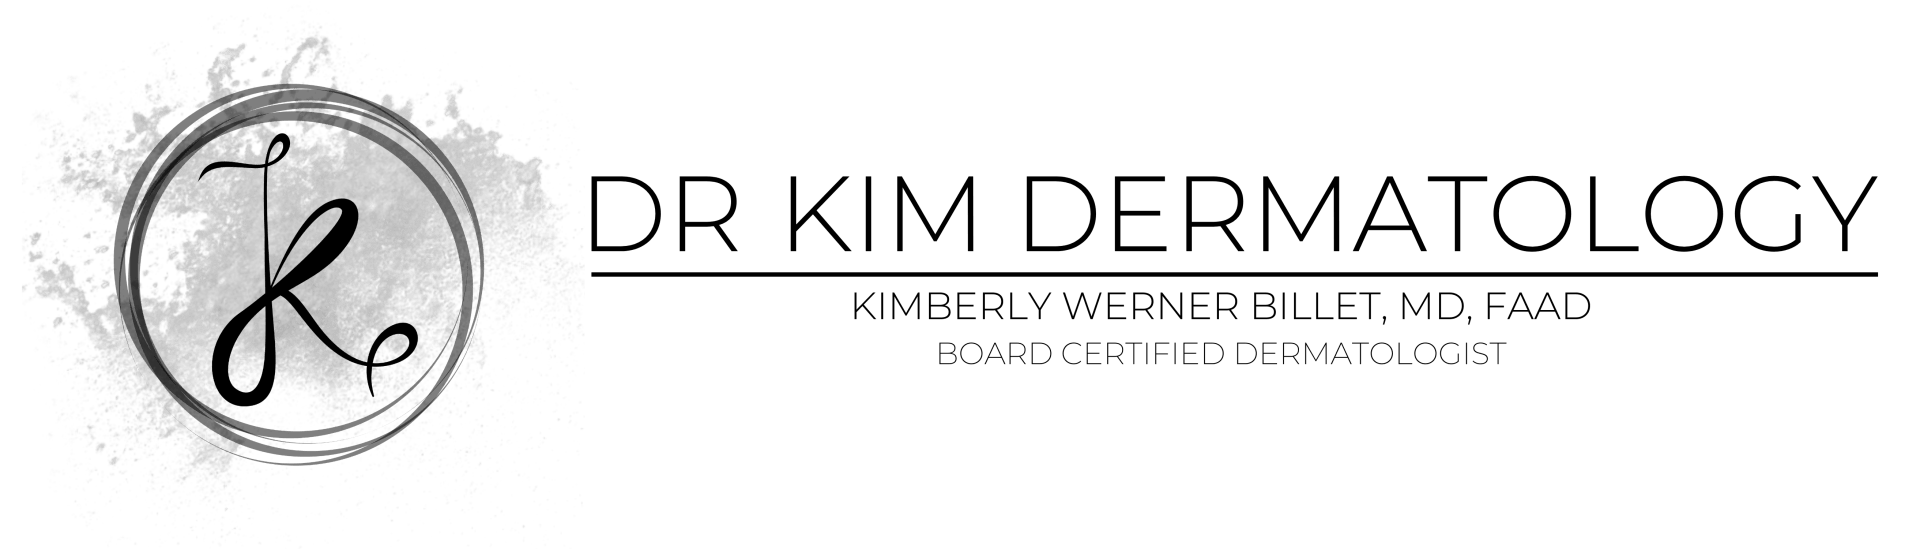 Dr. Kim Dermatology logo